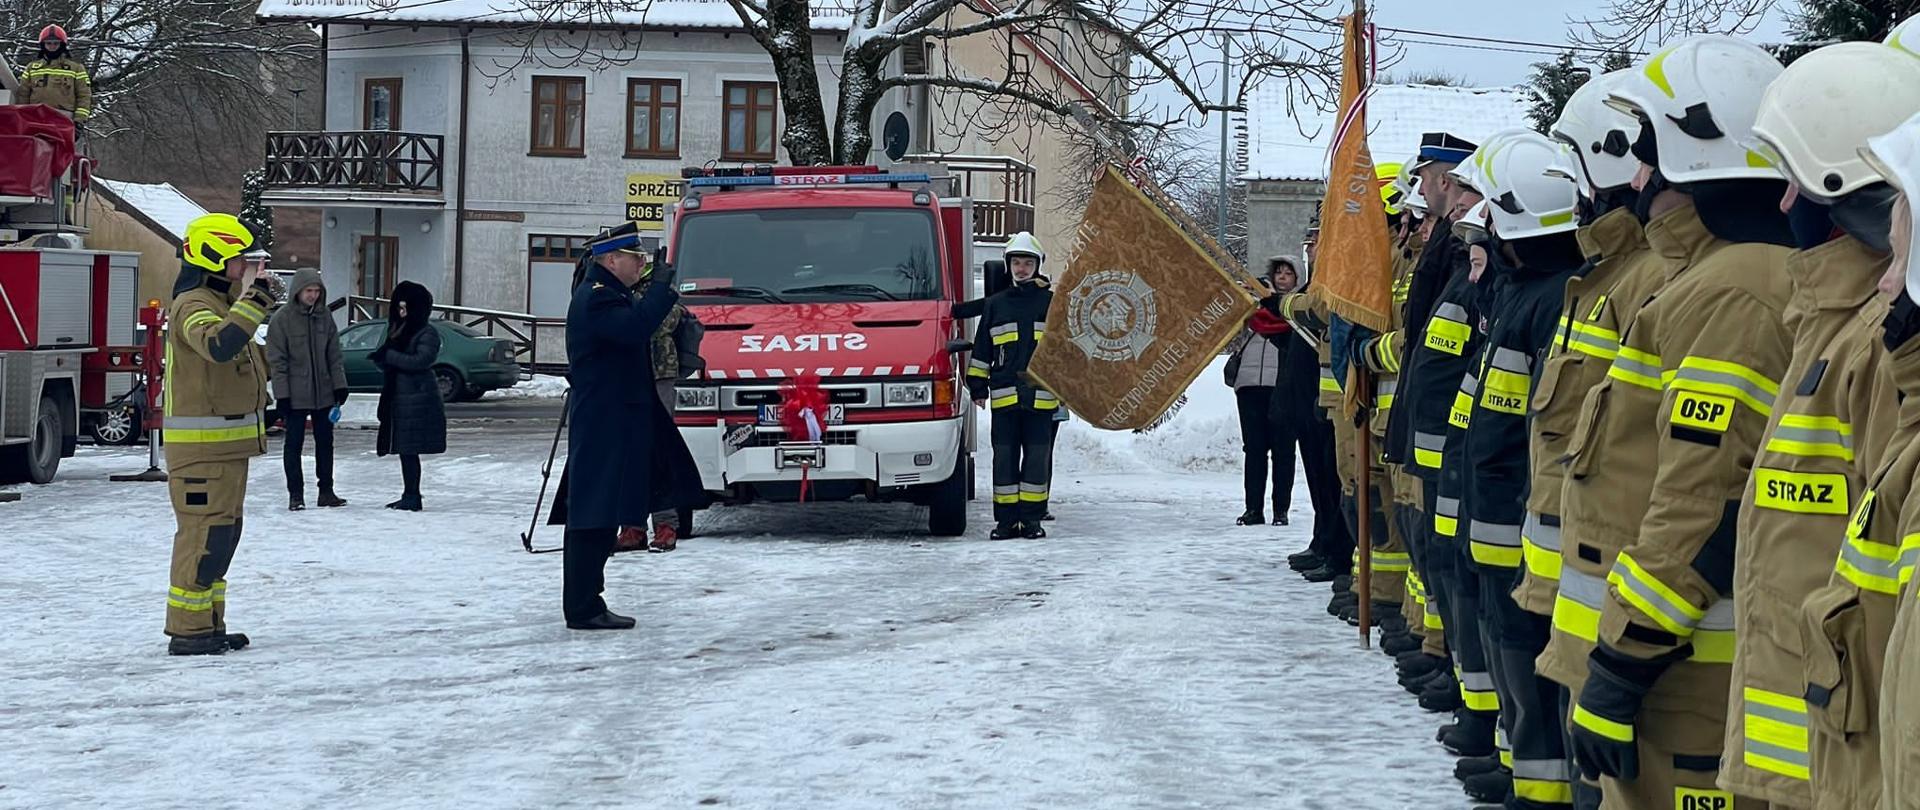 W centralnej części znajduje się lekki pojazd ratowniczo gaśniczy. Po prawej stronie w szeregu stoją w umundurowani strażacy, na przeciwko nich stoi Zastępca Warmińsko Mazurskiego Komendanta Wojewódzkiego. W tle zabudowania miejskie.